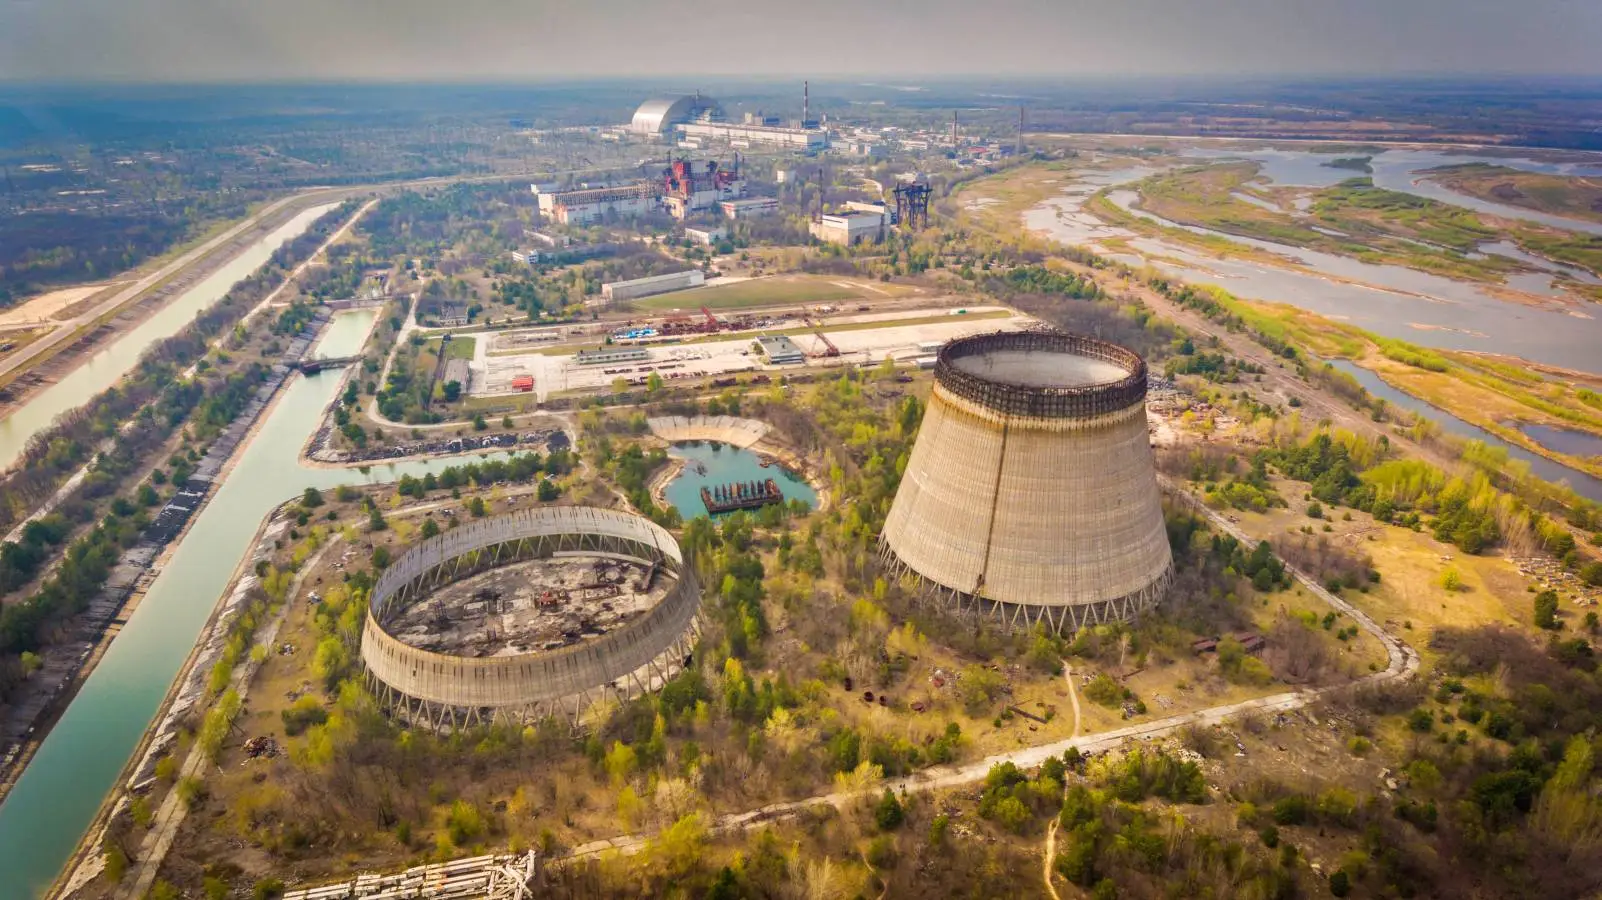 Venäjä pommitti Zaporizhian ydinvoimalaa vain 300 metrin päässä ydinreaktoreista